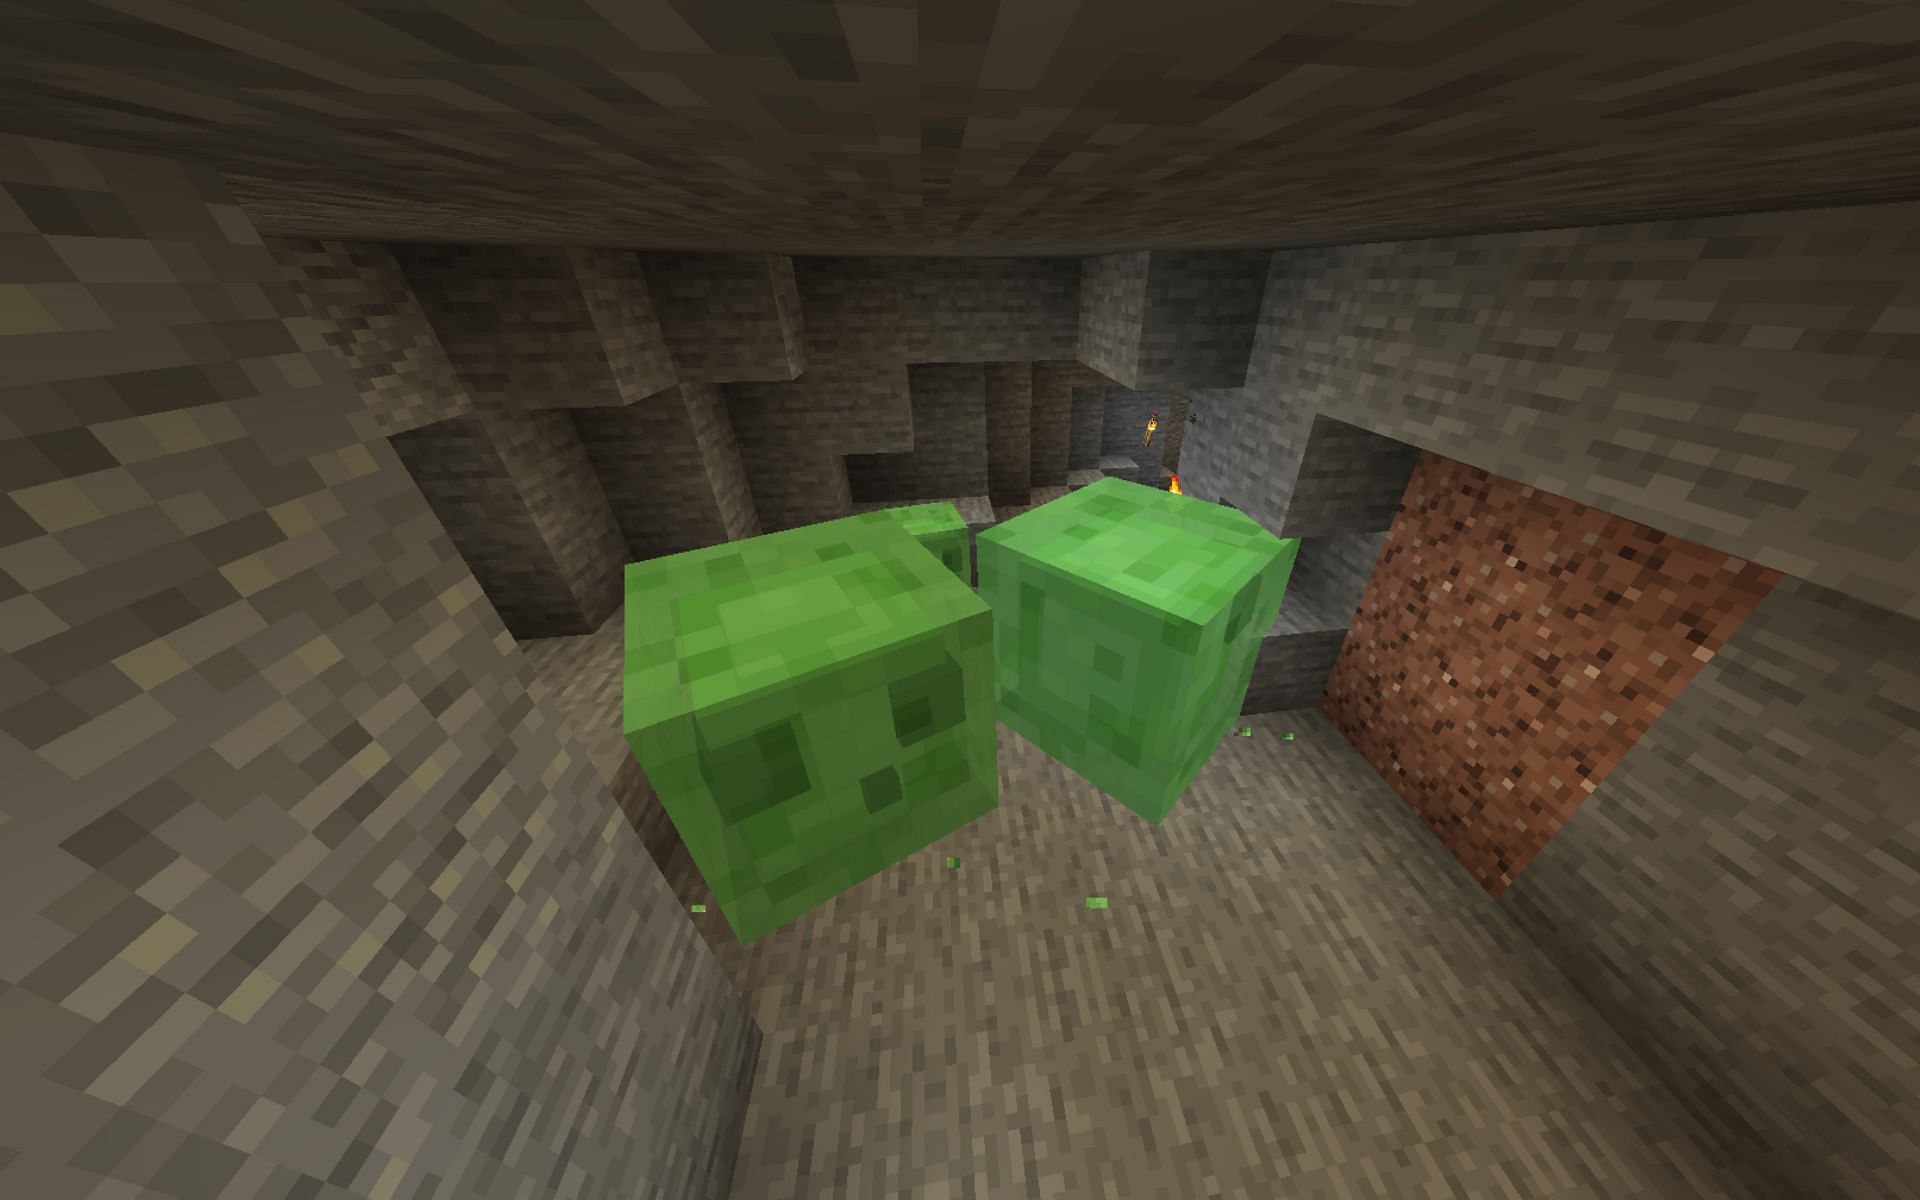 Slimes spawning (Image via Minecraft)